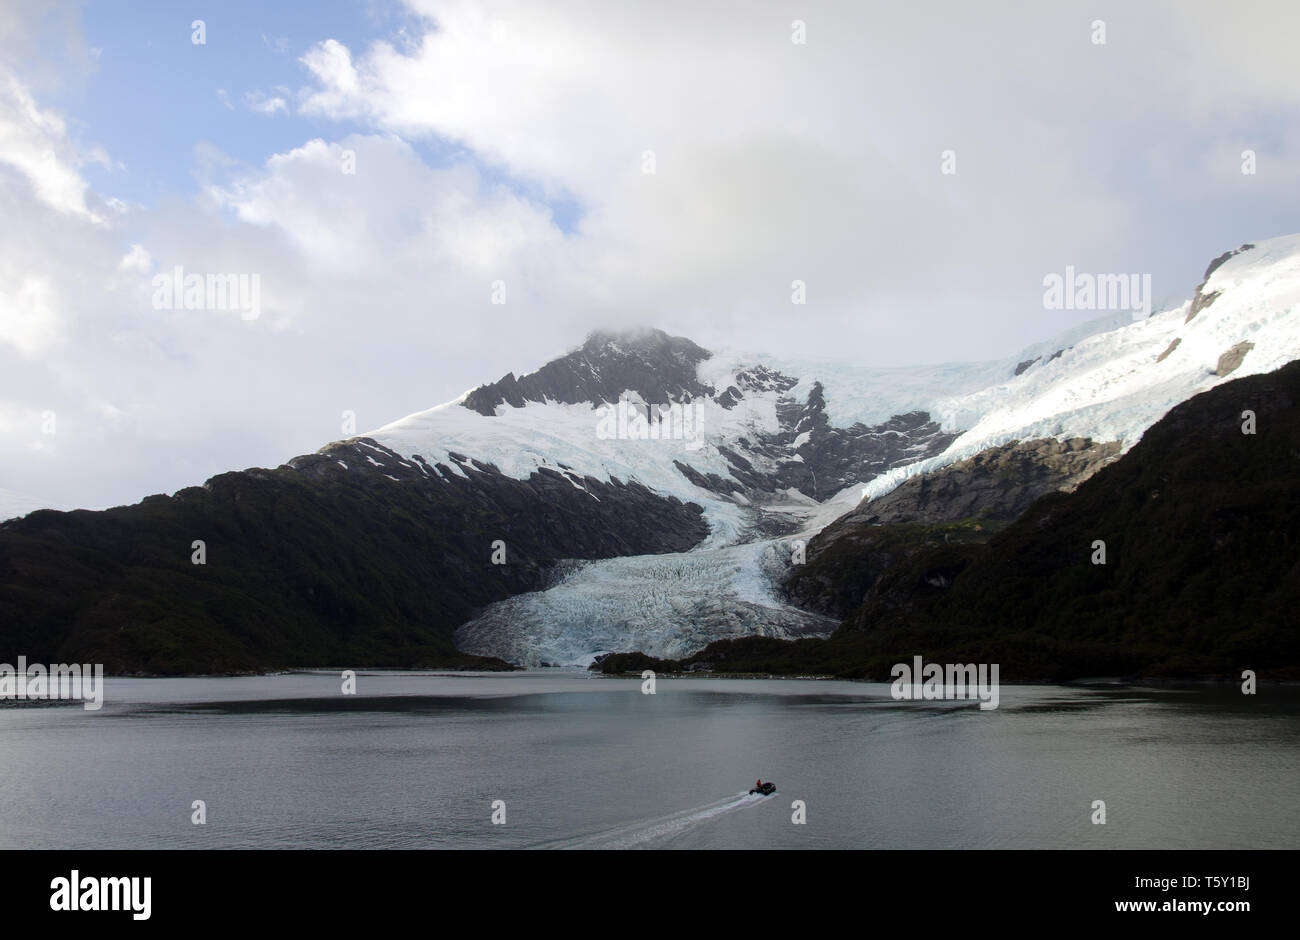 El glaciar Serrano, visto desde un fiordo de Chile Foto de stock